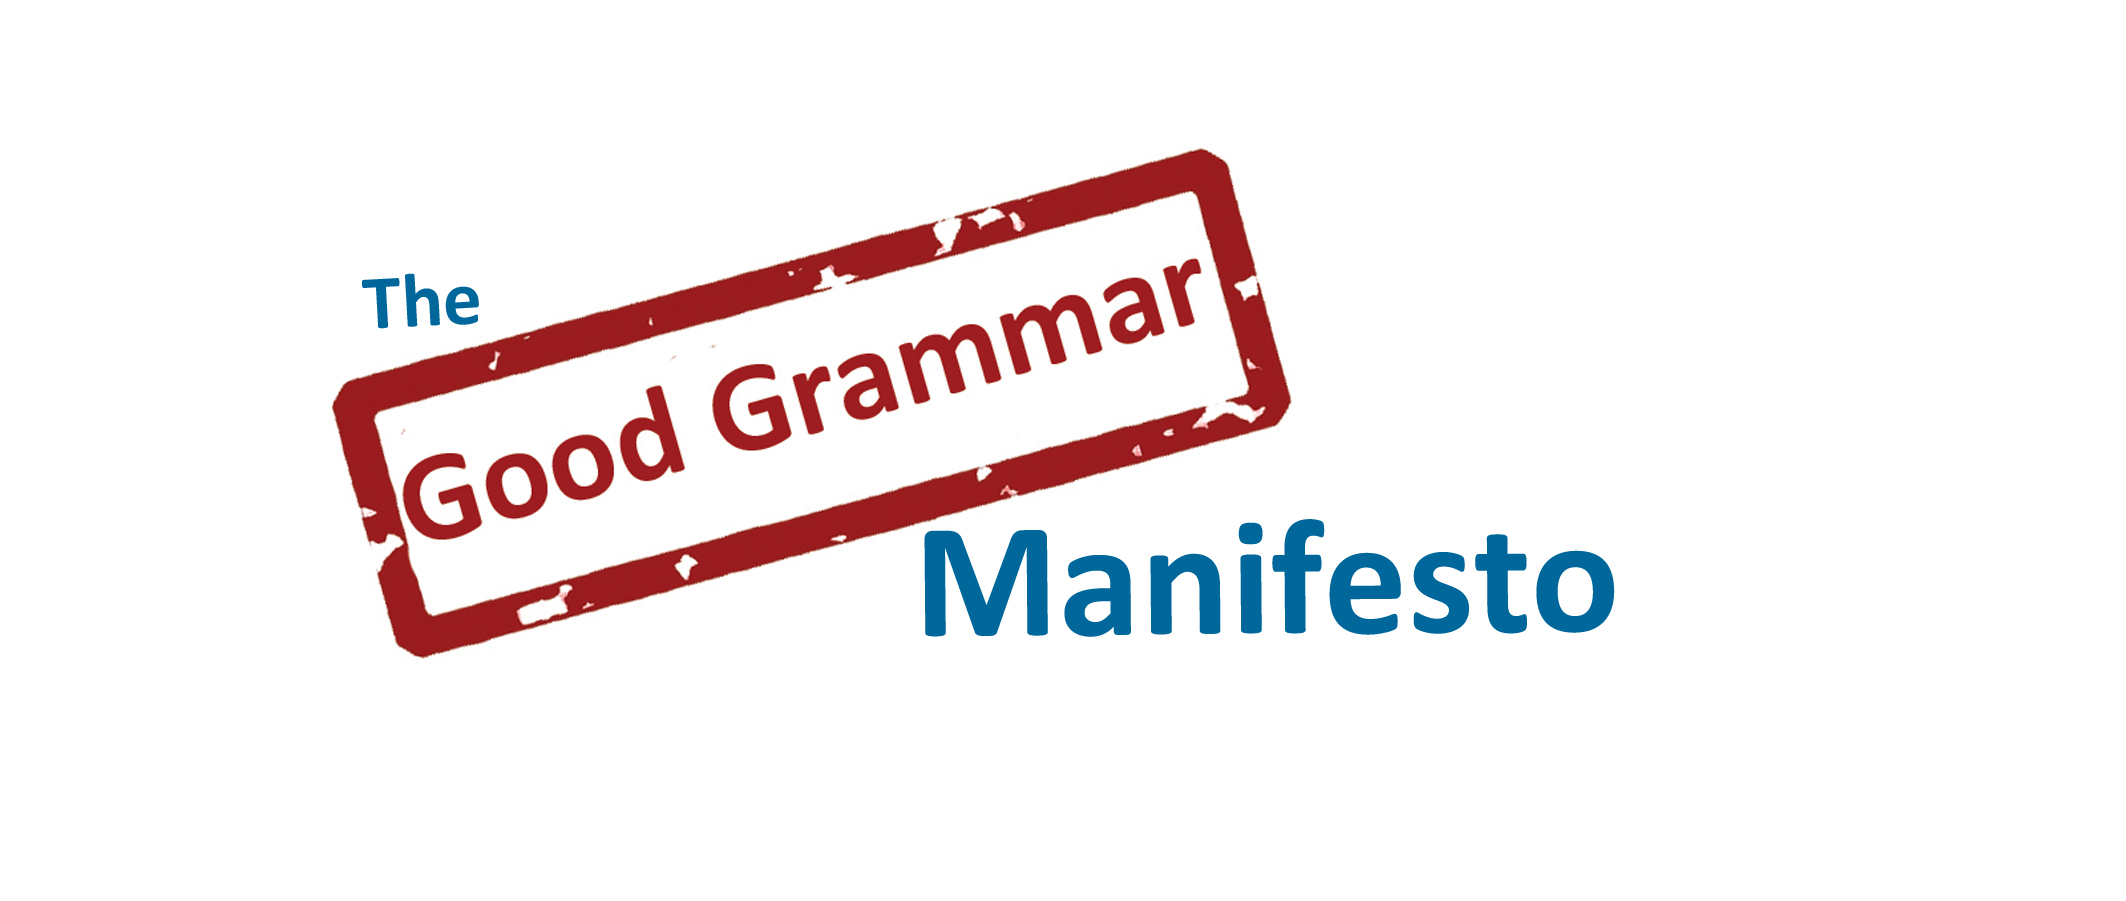 The Good Grammar Manifesto